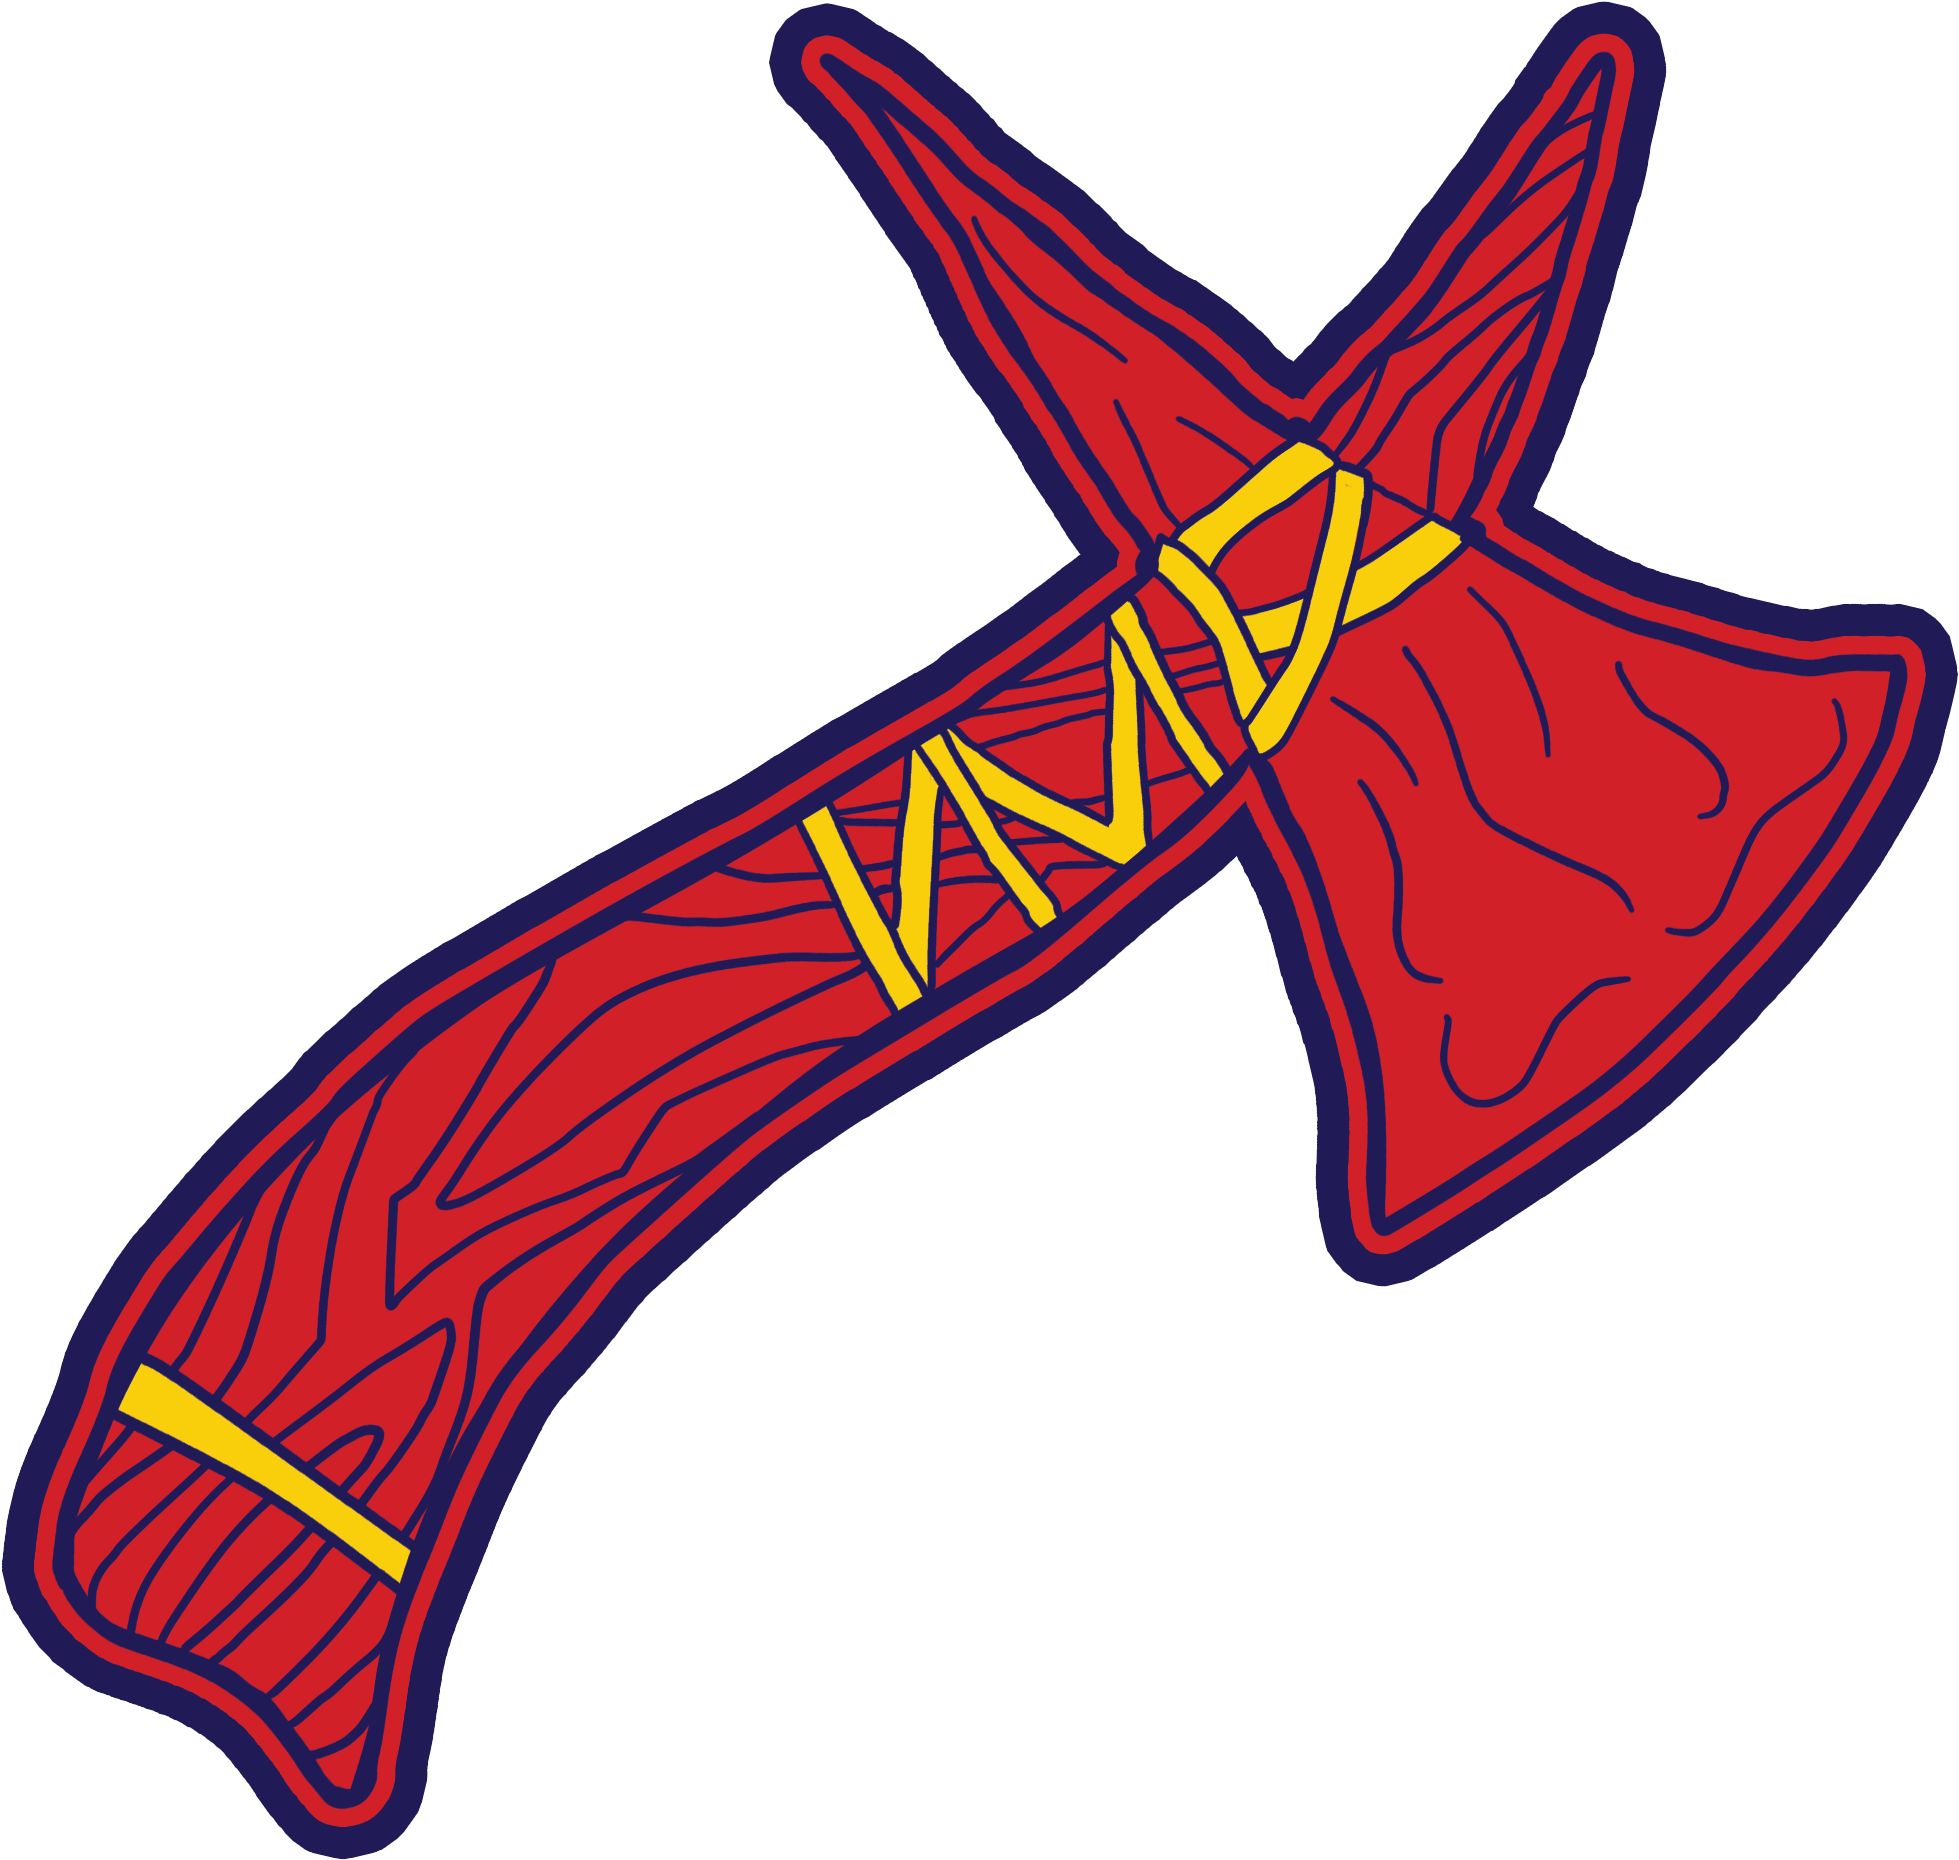 Braves logo прозрачное изображение